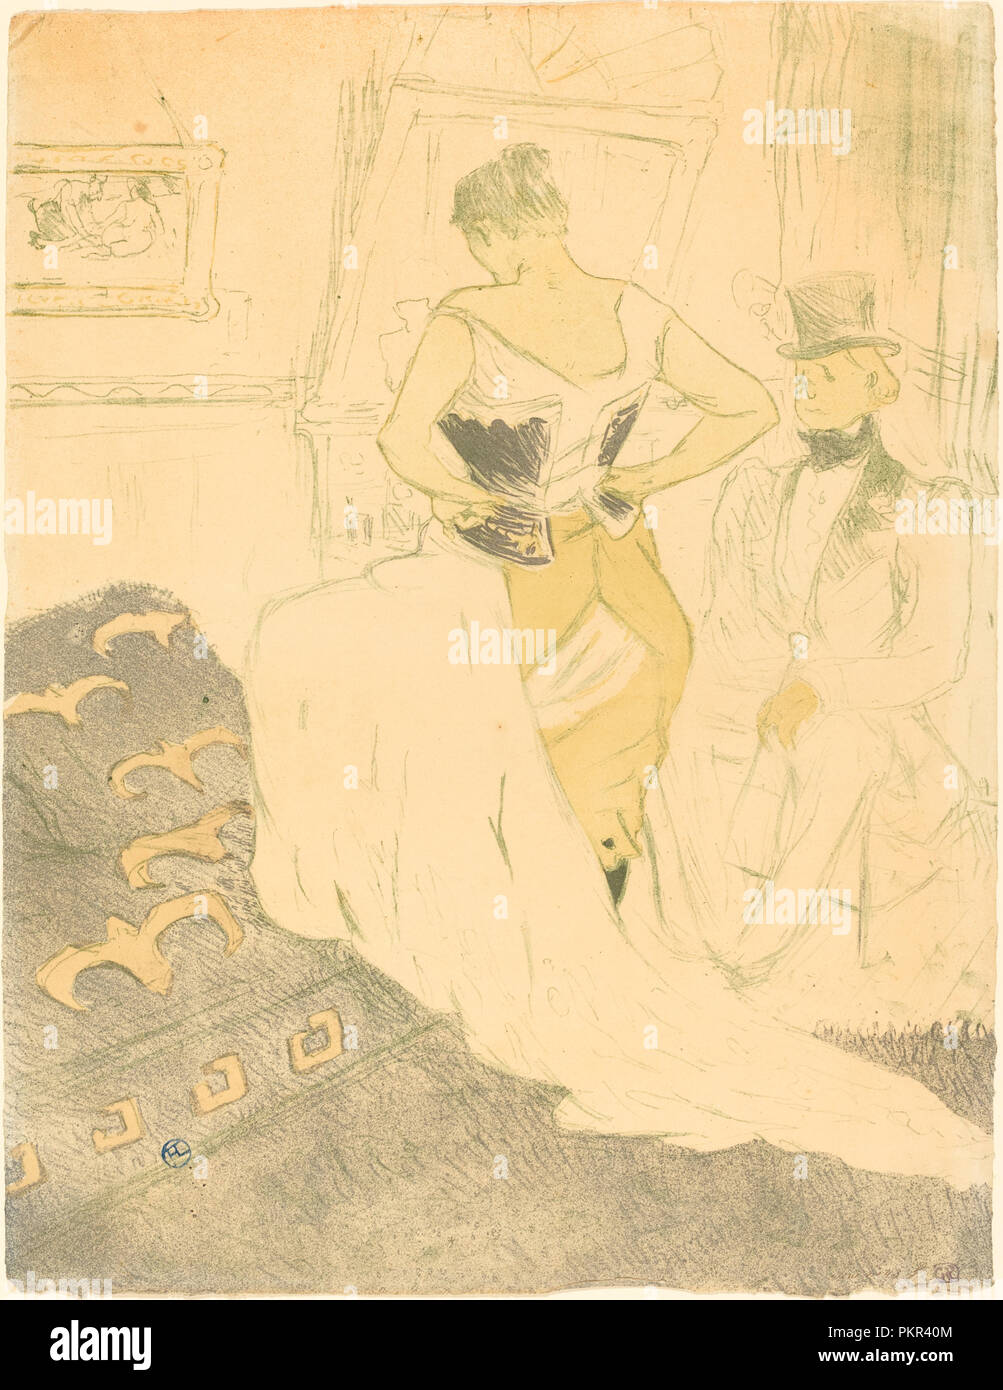 Donna in Corsetto (Femme en corsetto). Data: 1896. Dimensioni: IMMAGINE: 52,4 x 40,3 cm (20 5/8 x 15 7/8 in.) foglio: 52,4 x 40,3 cm (20 5/8 x 15 7/8 in.). Media: 4-Litografia a colori. Museo: National Gallery of Art di Washington DC. Autore: Henri de Toulouse-Lautrec. TOULOUSE-LAUTREC, HENRI DE. Foto Stock